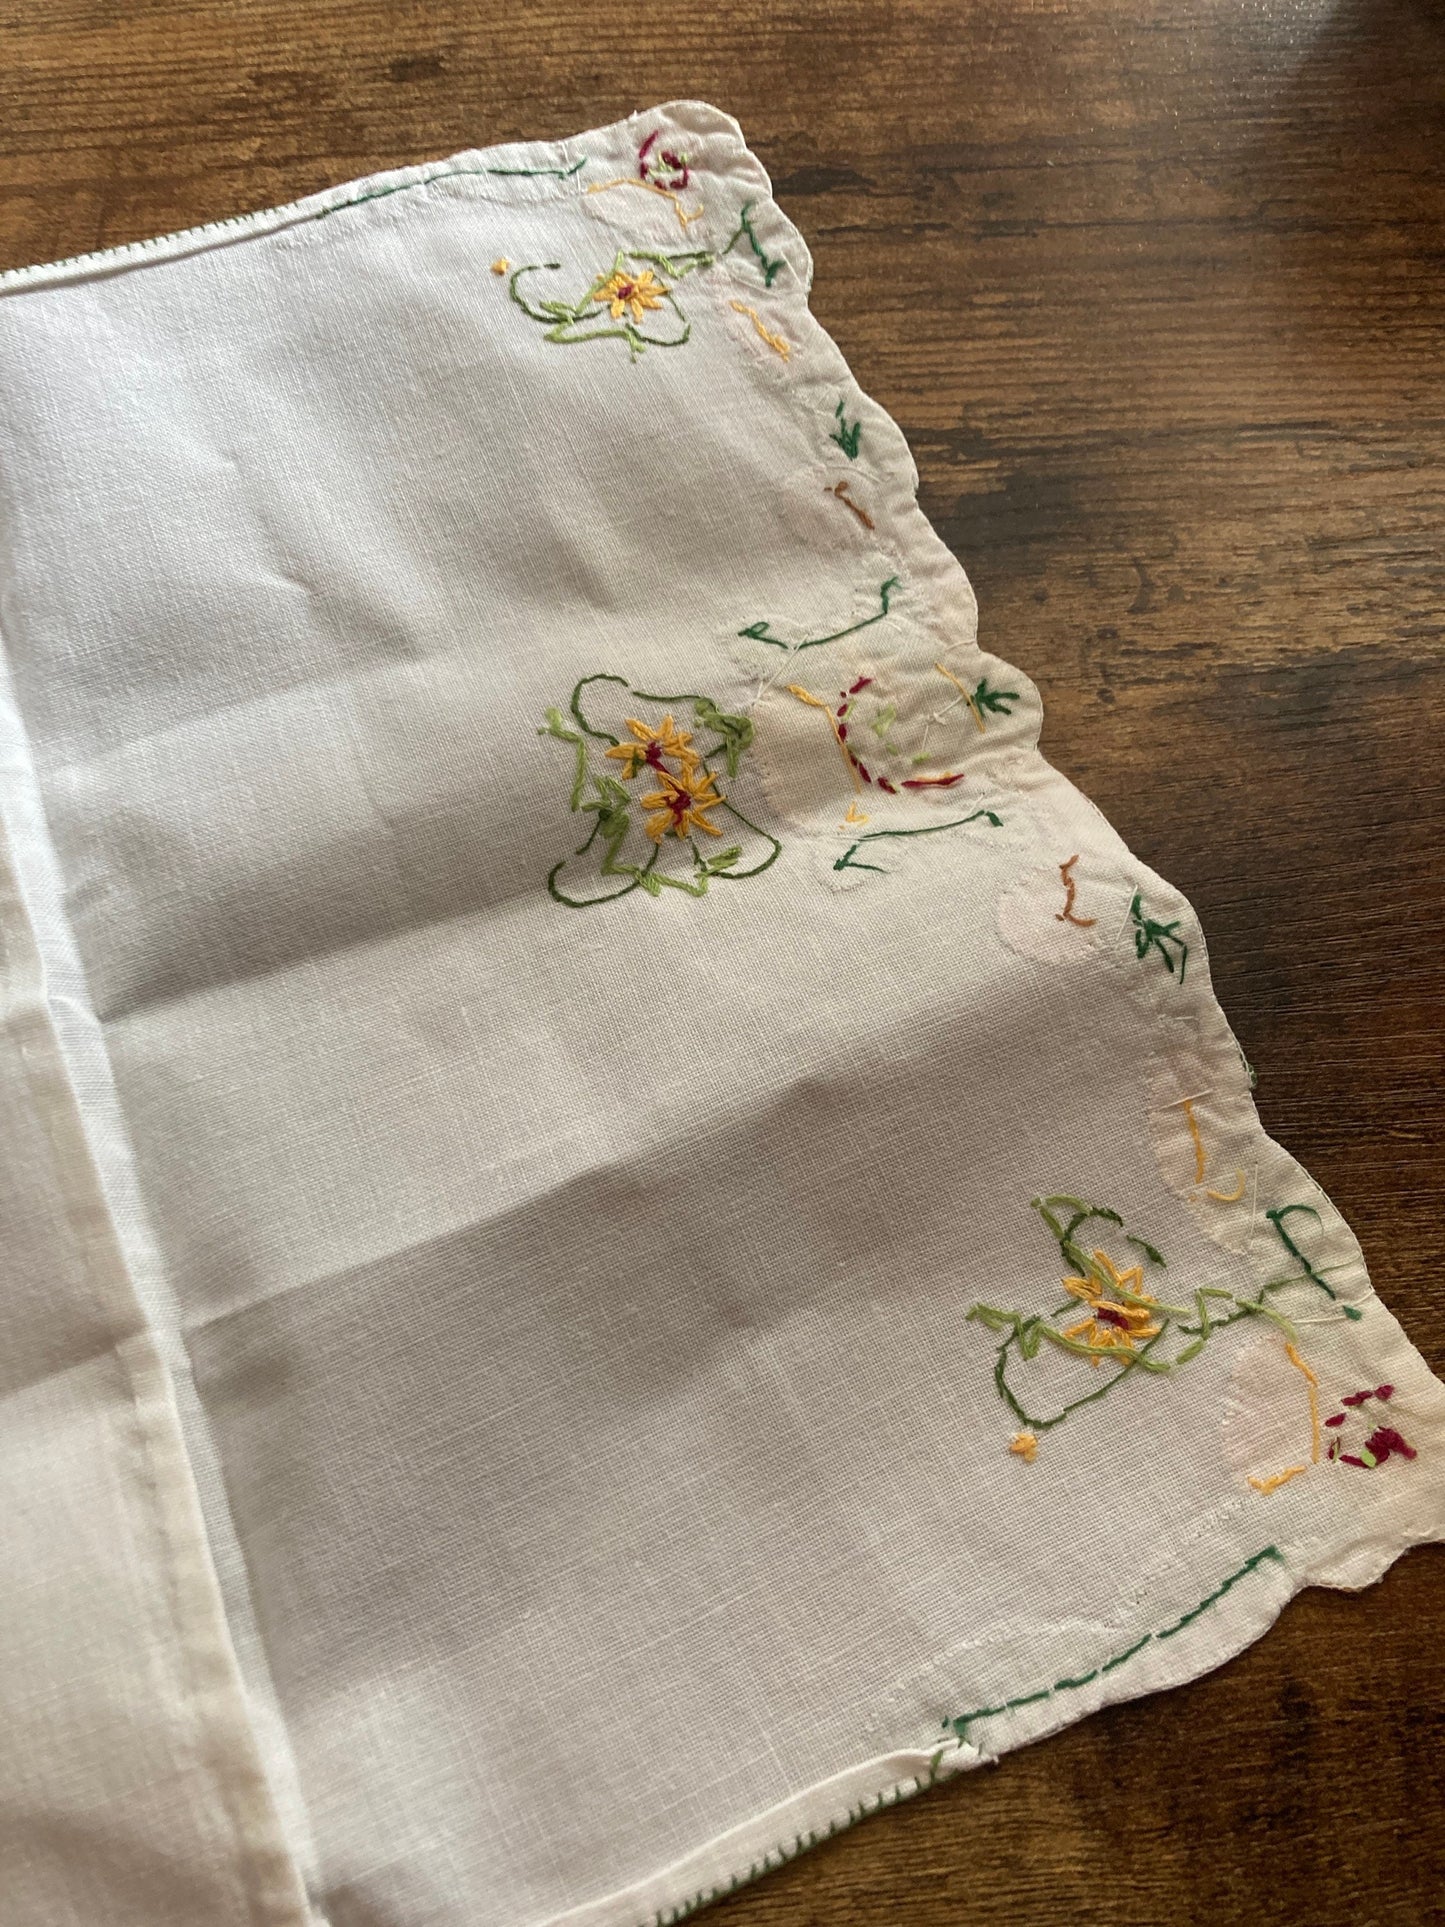 9.5 inch White Handkerchief case hankie case Linen cotton with embroidered floral design Glove case